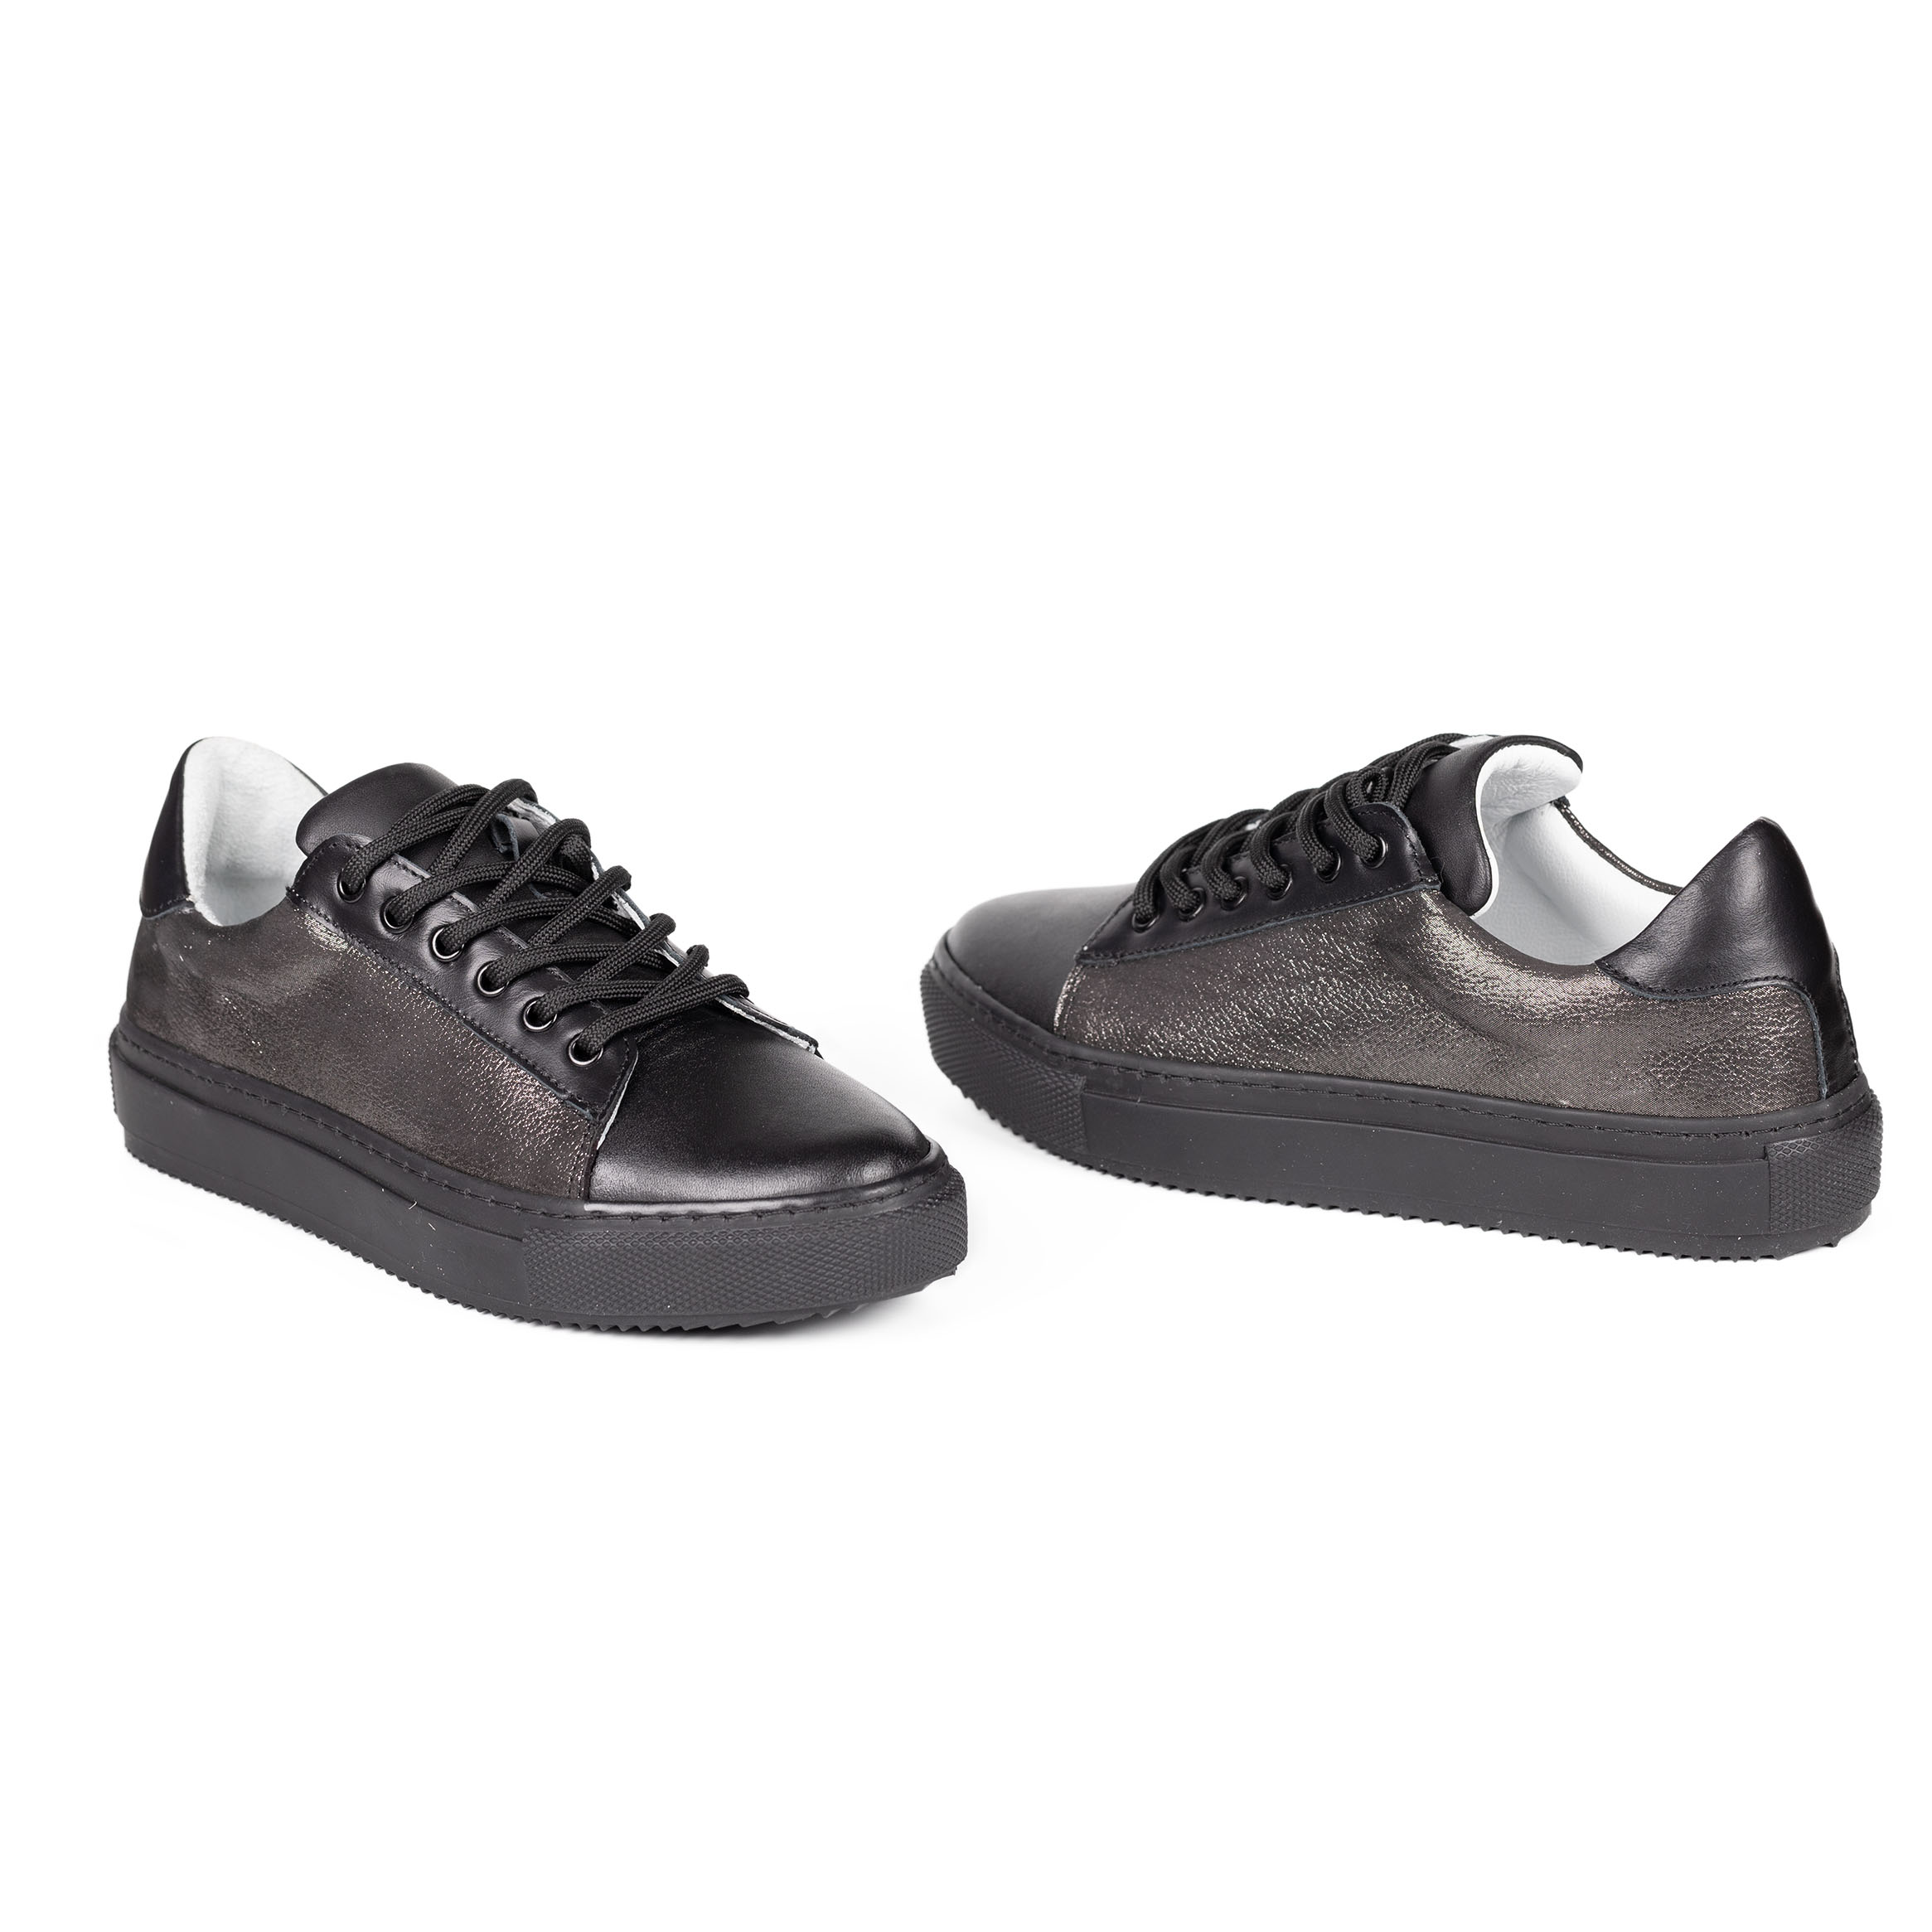 Kadın Hakiki Deri Simli Siyah Günlük Spor Ayakkabı / Sneakers, Renk: Simli Siyah, Beden: 36